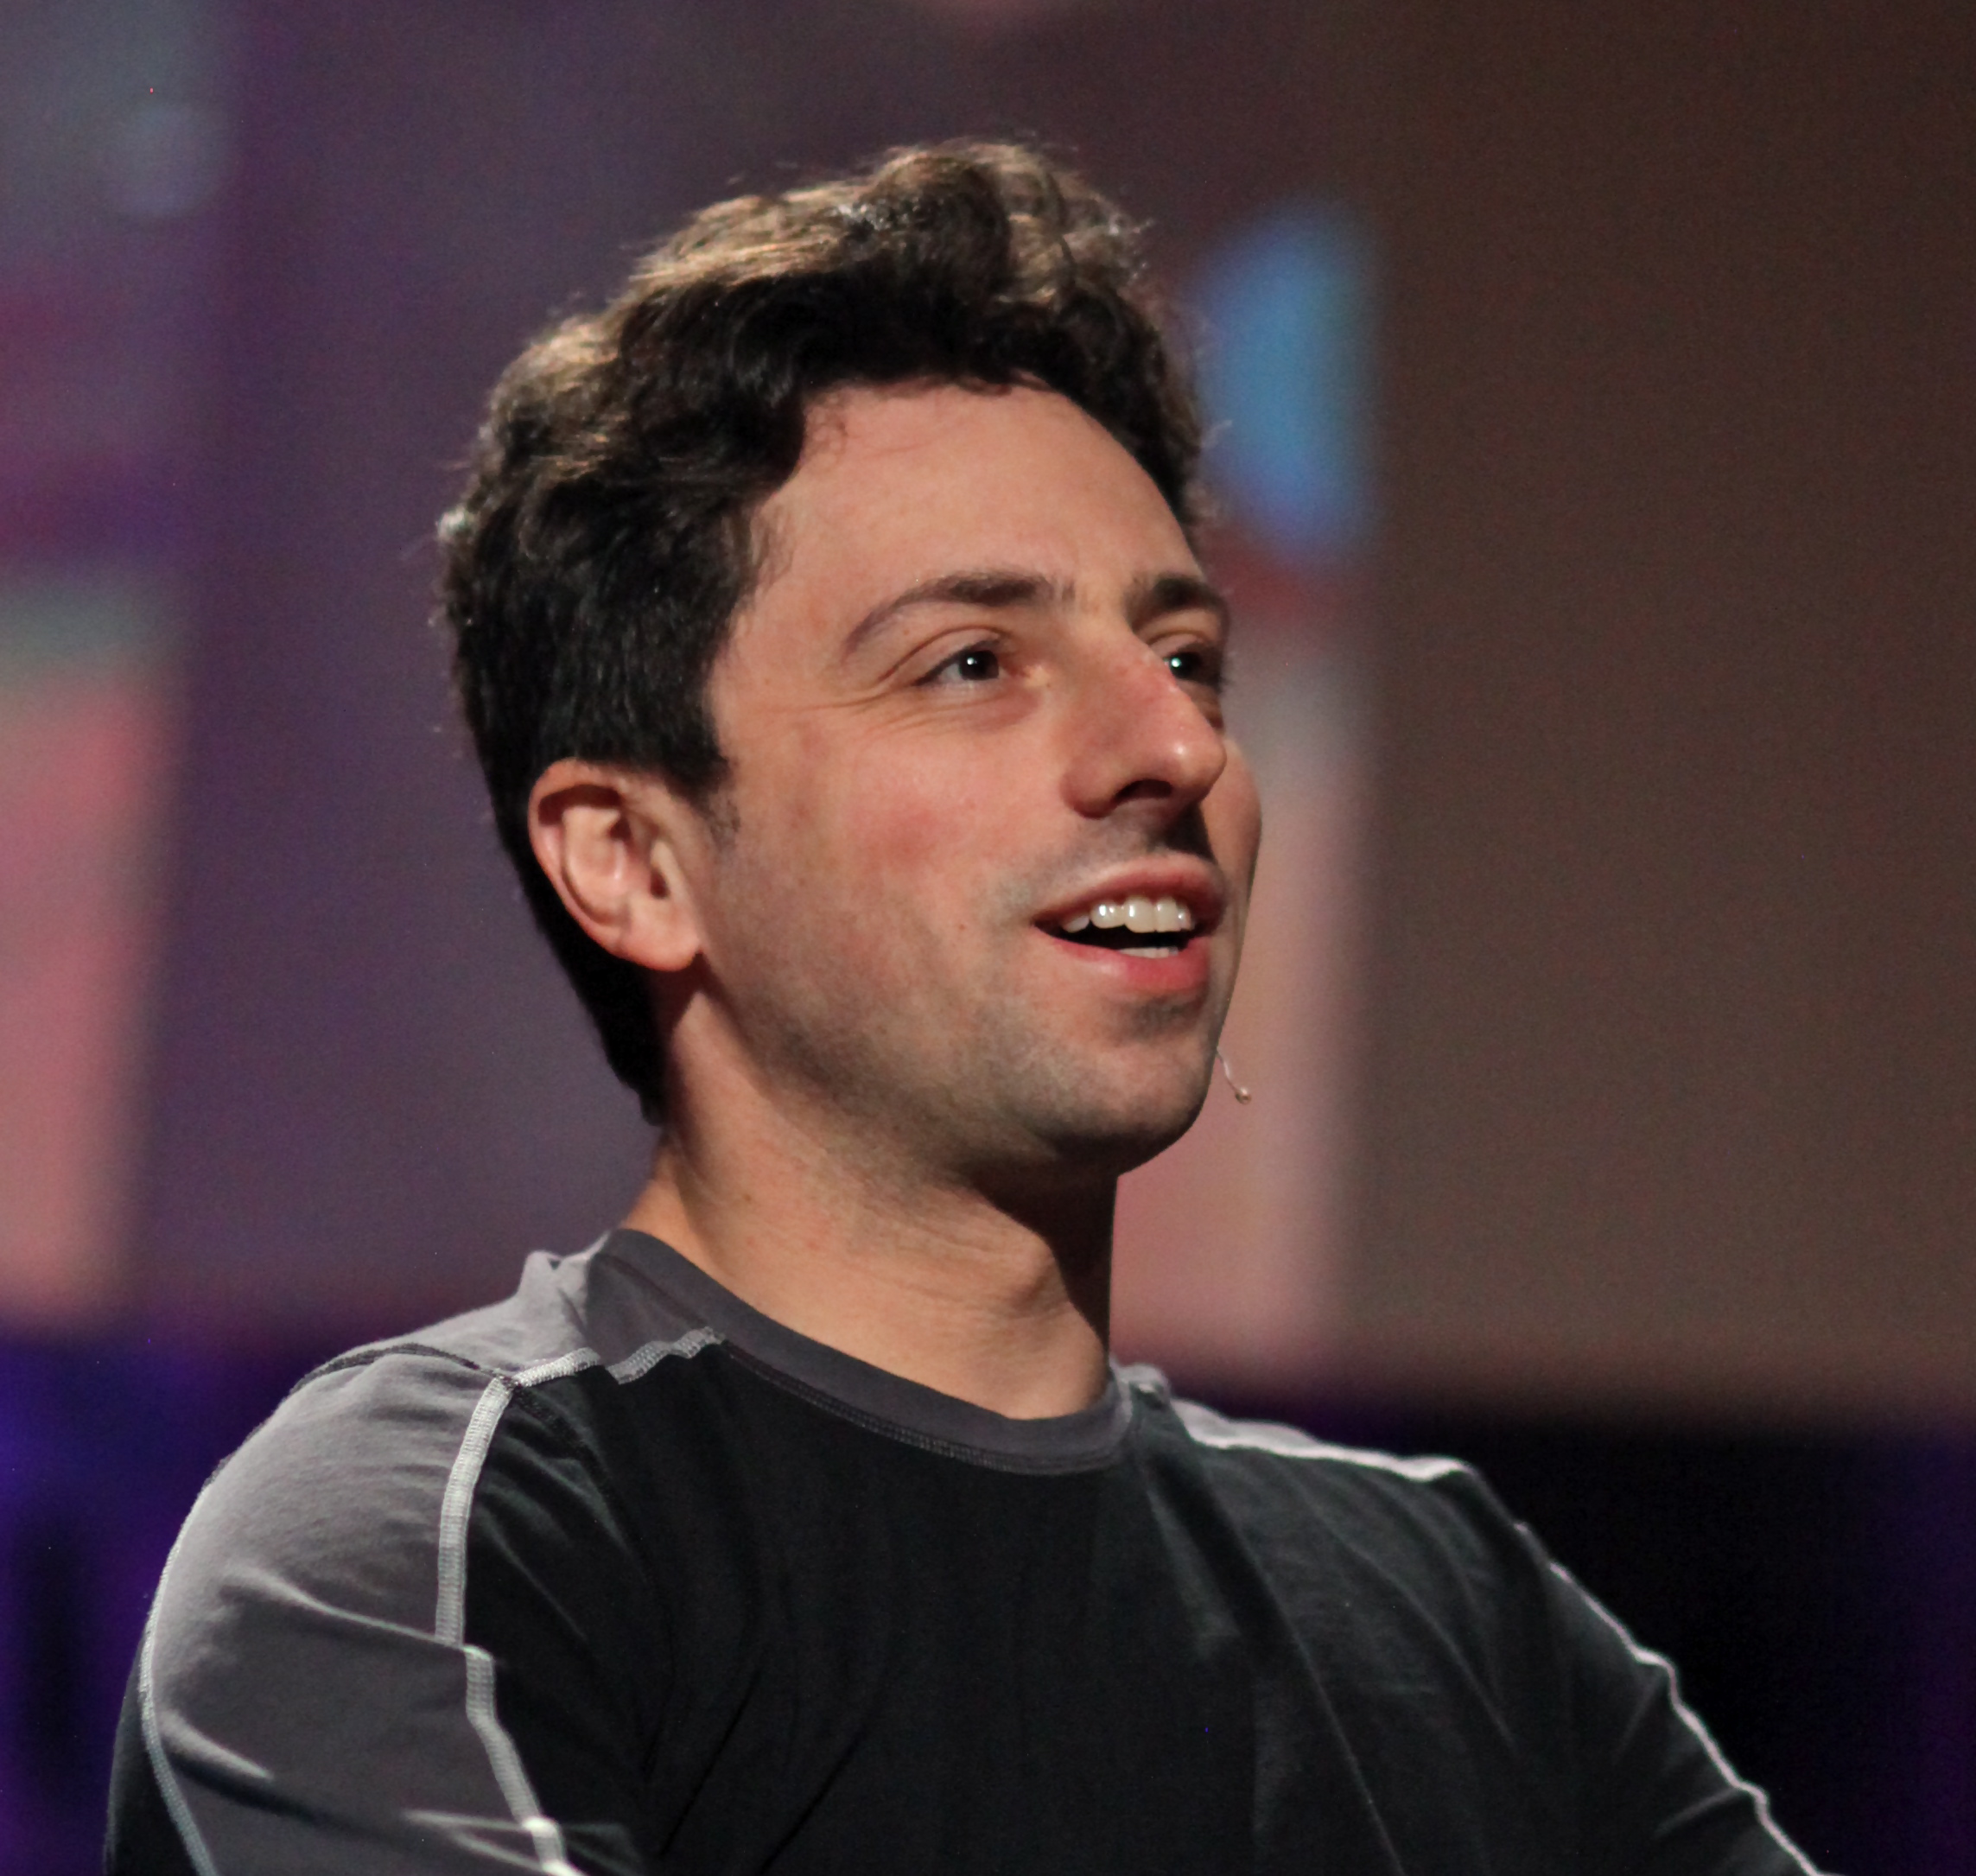 Auf dem Bild ist Sergey Brin. Das Bild ist aus dem Jahr 2010